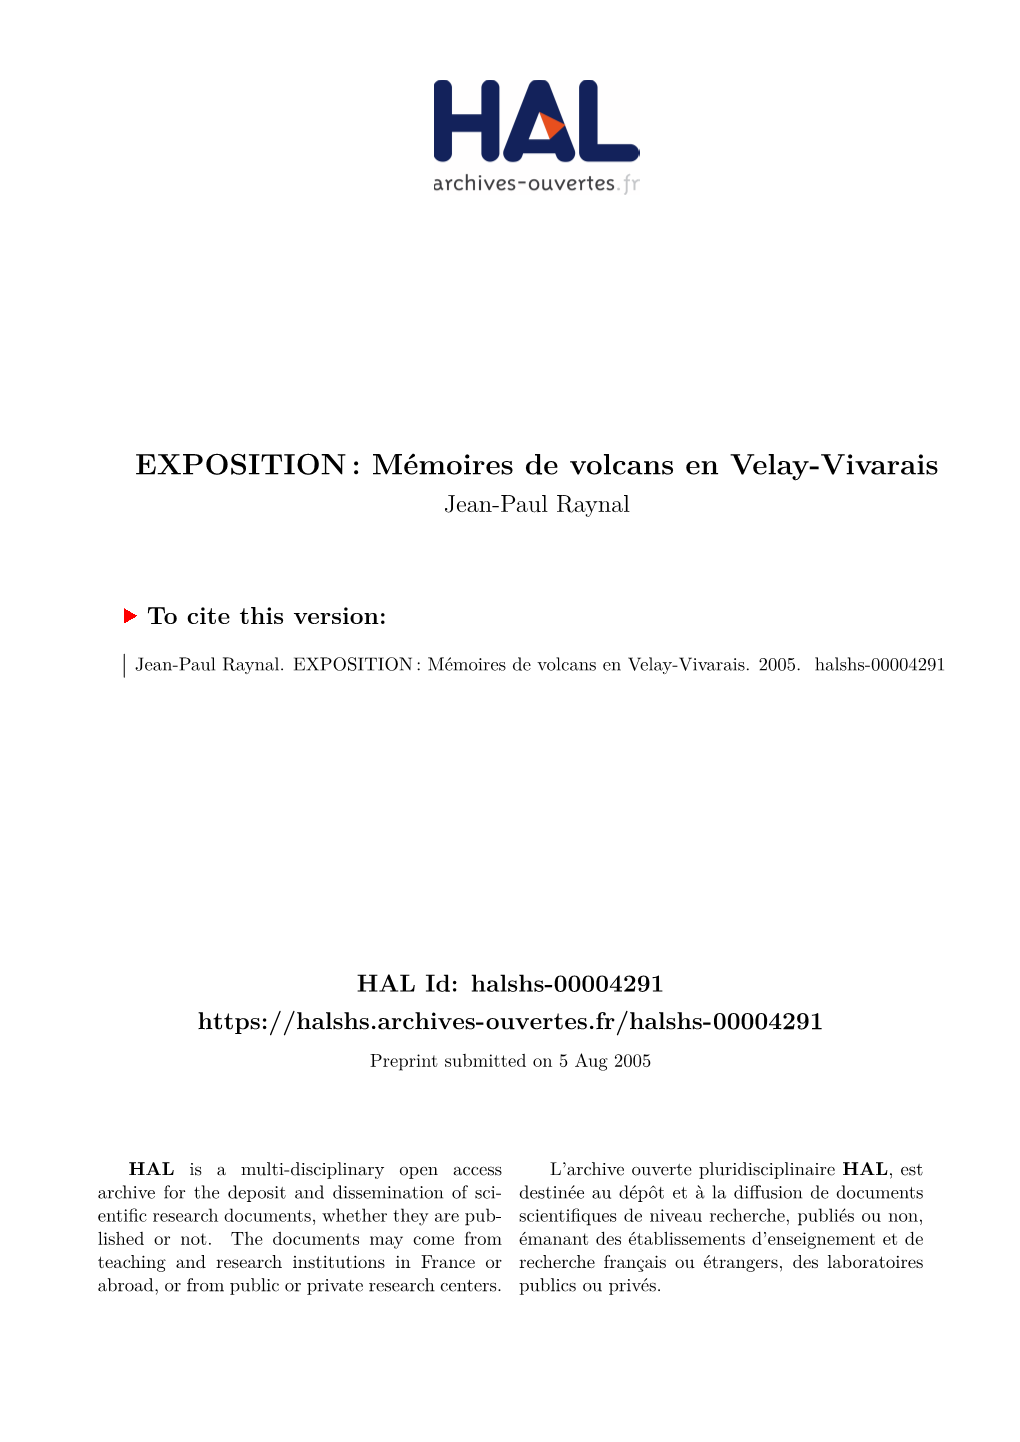 EXPOSITION: Mémoires De Volcans En Velay-Vivarais